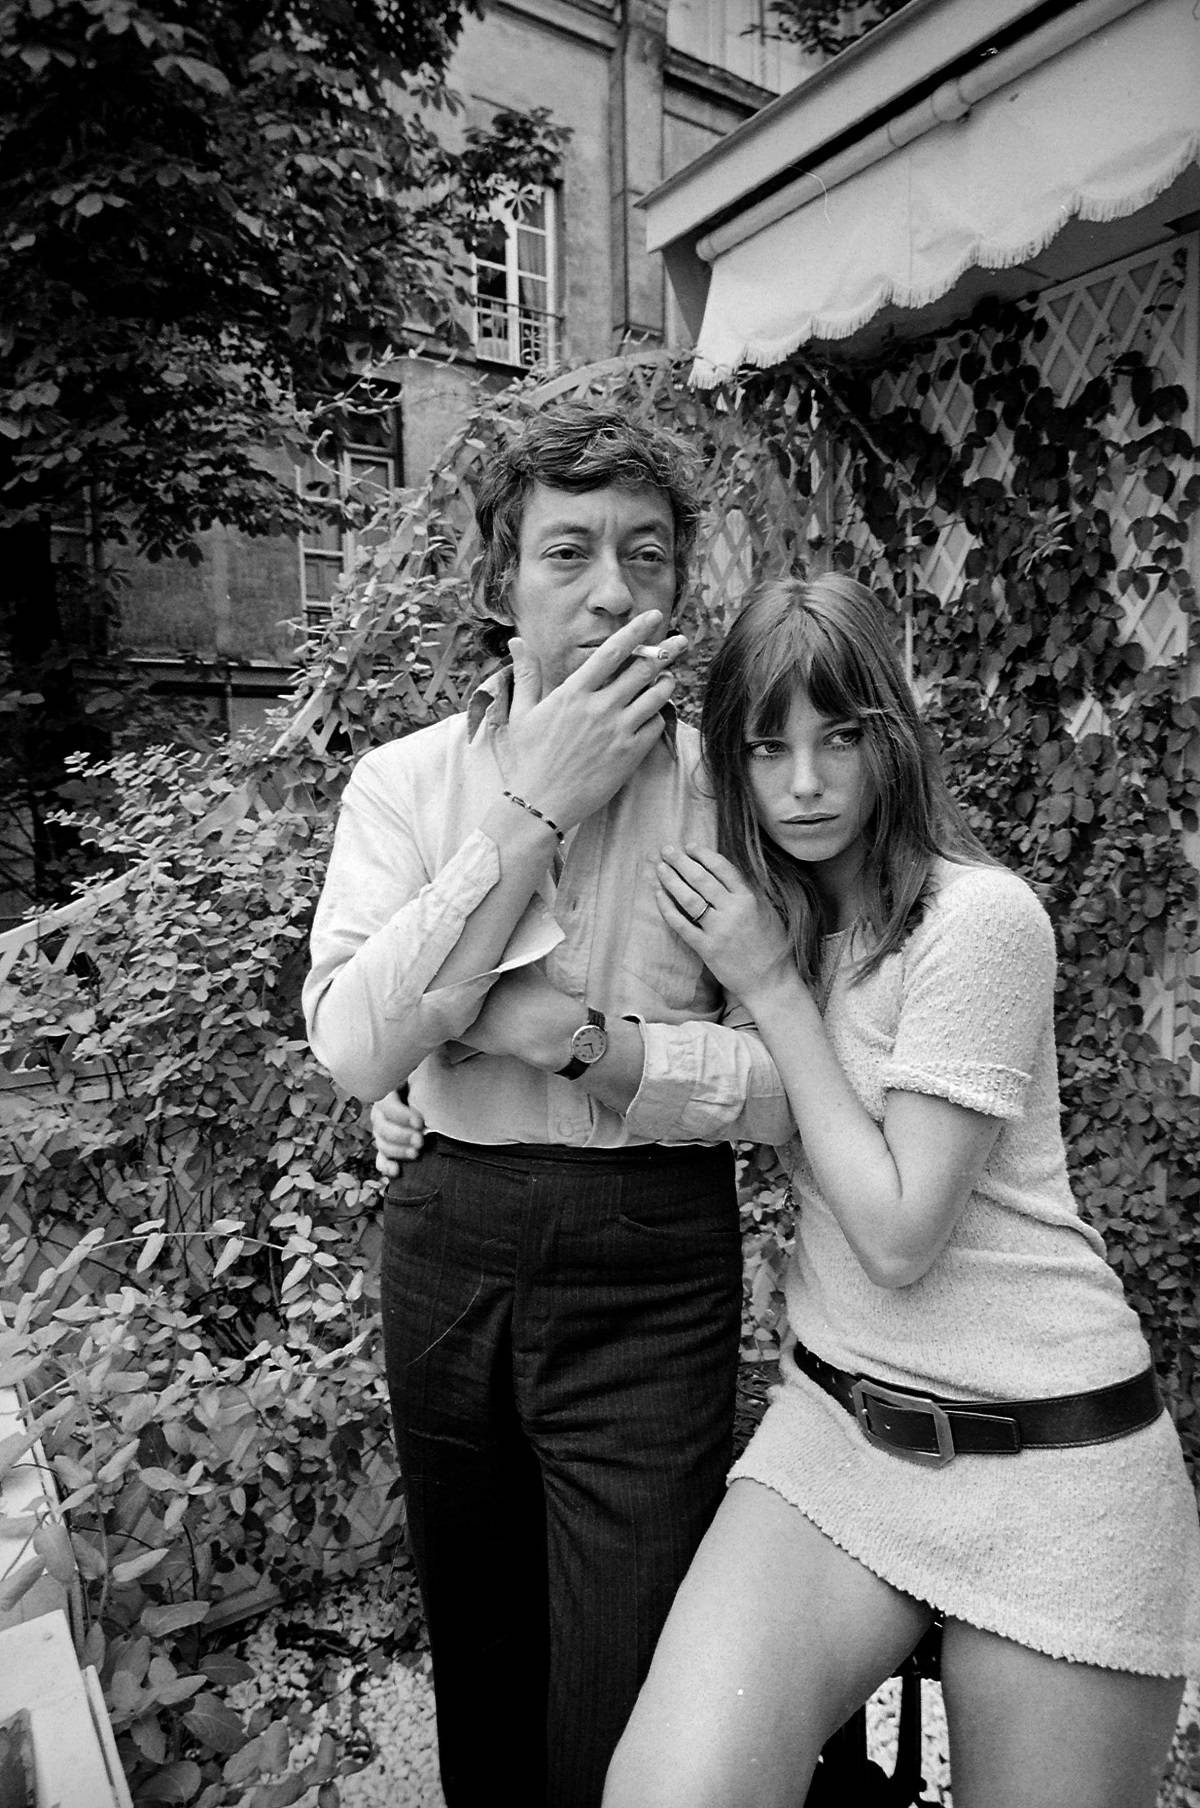 Serge Gainsbourg i jane Birkin na hipisowskiej imprezie w 1969 roku